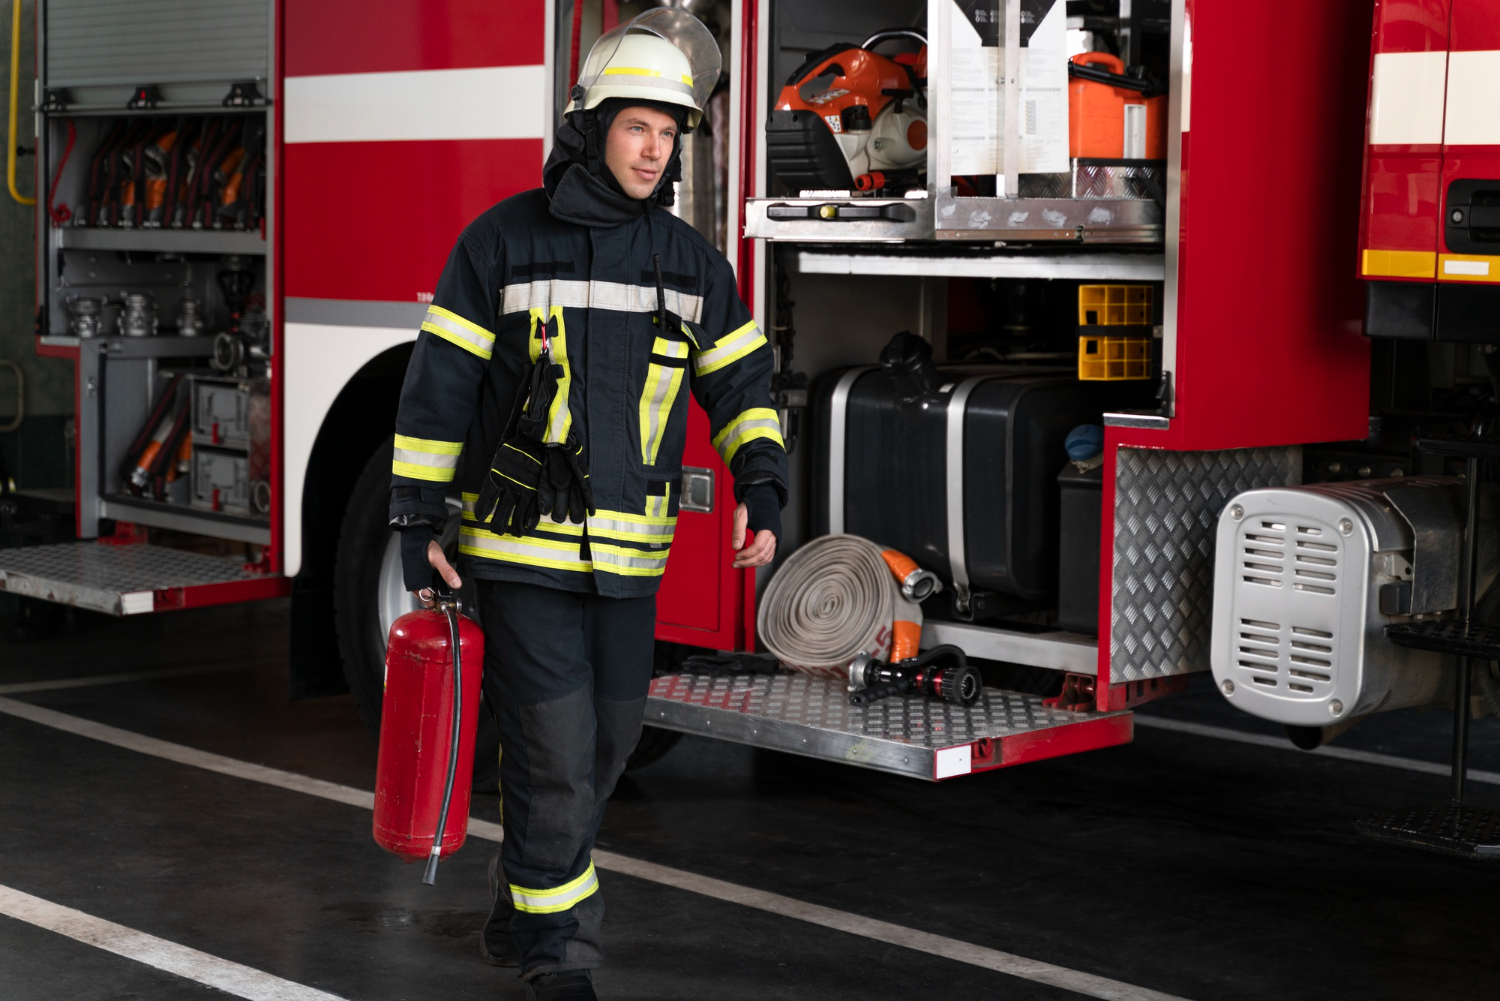 Dąbrowski strażak potrzebuje wsparcia w trudnej chwili życiowej